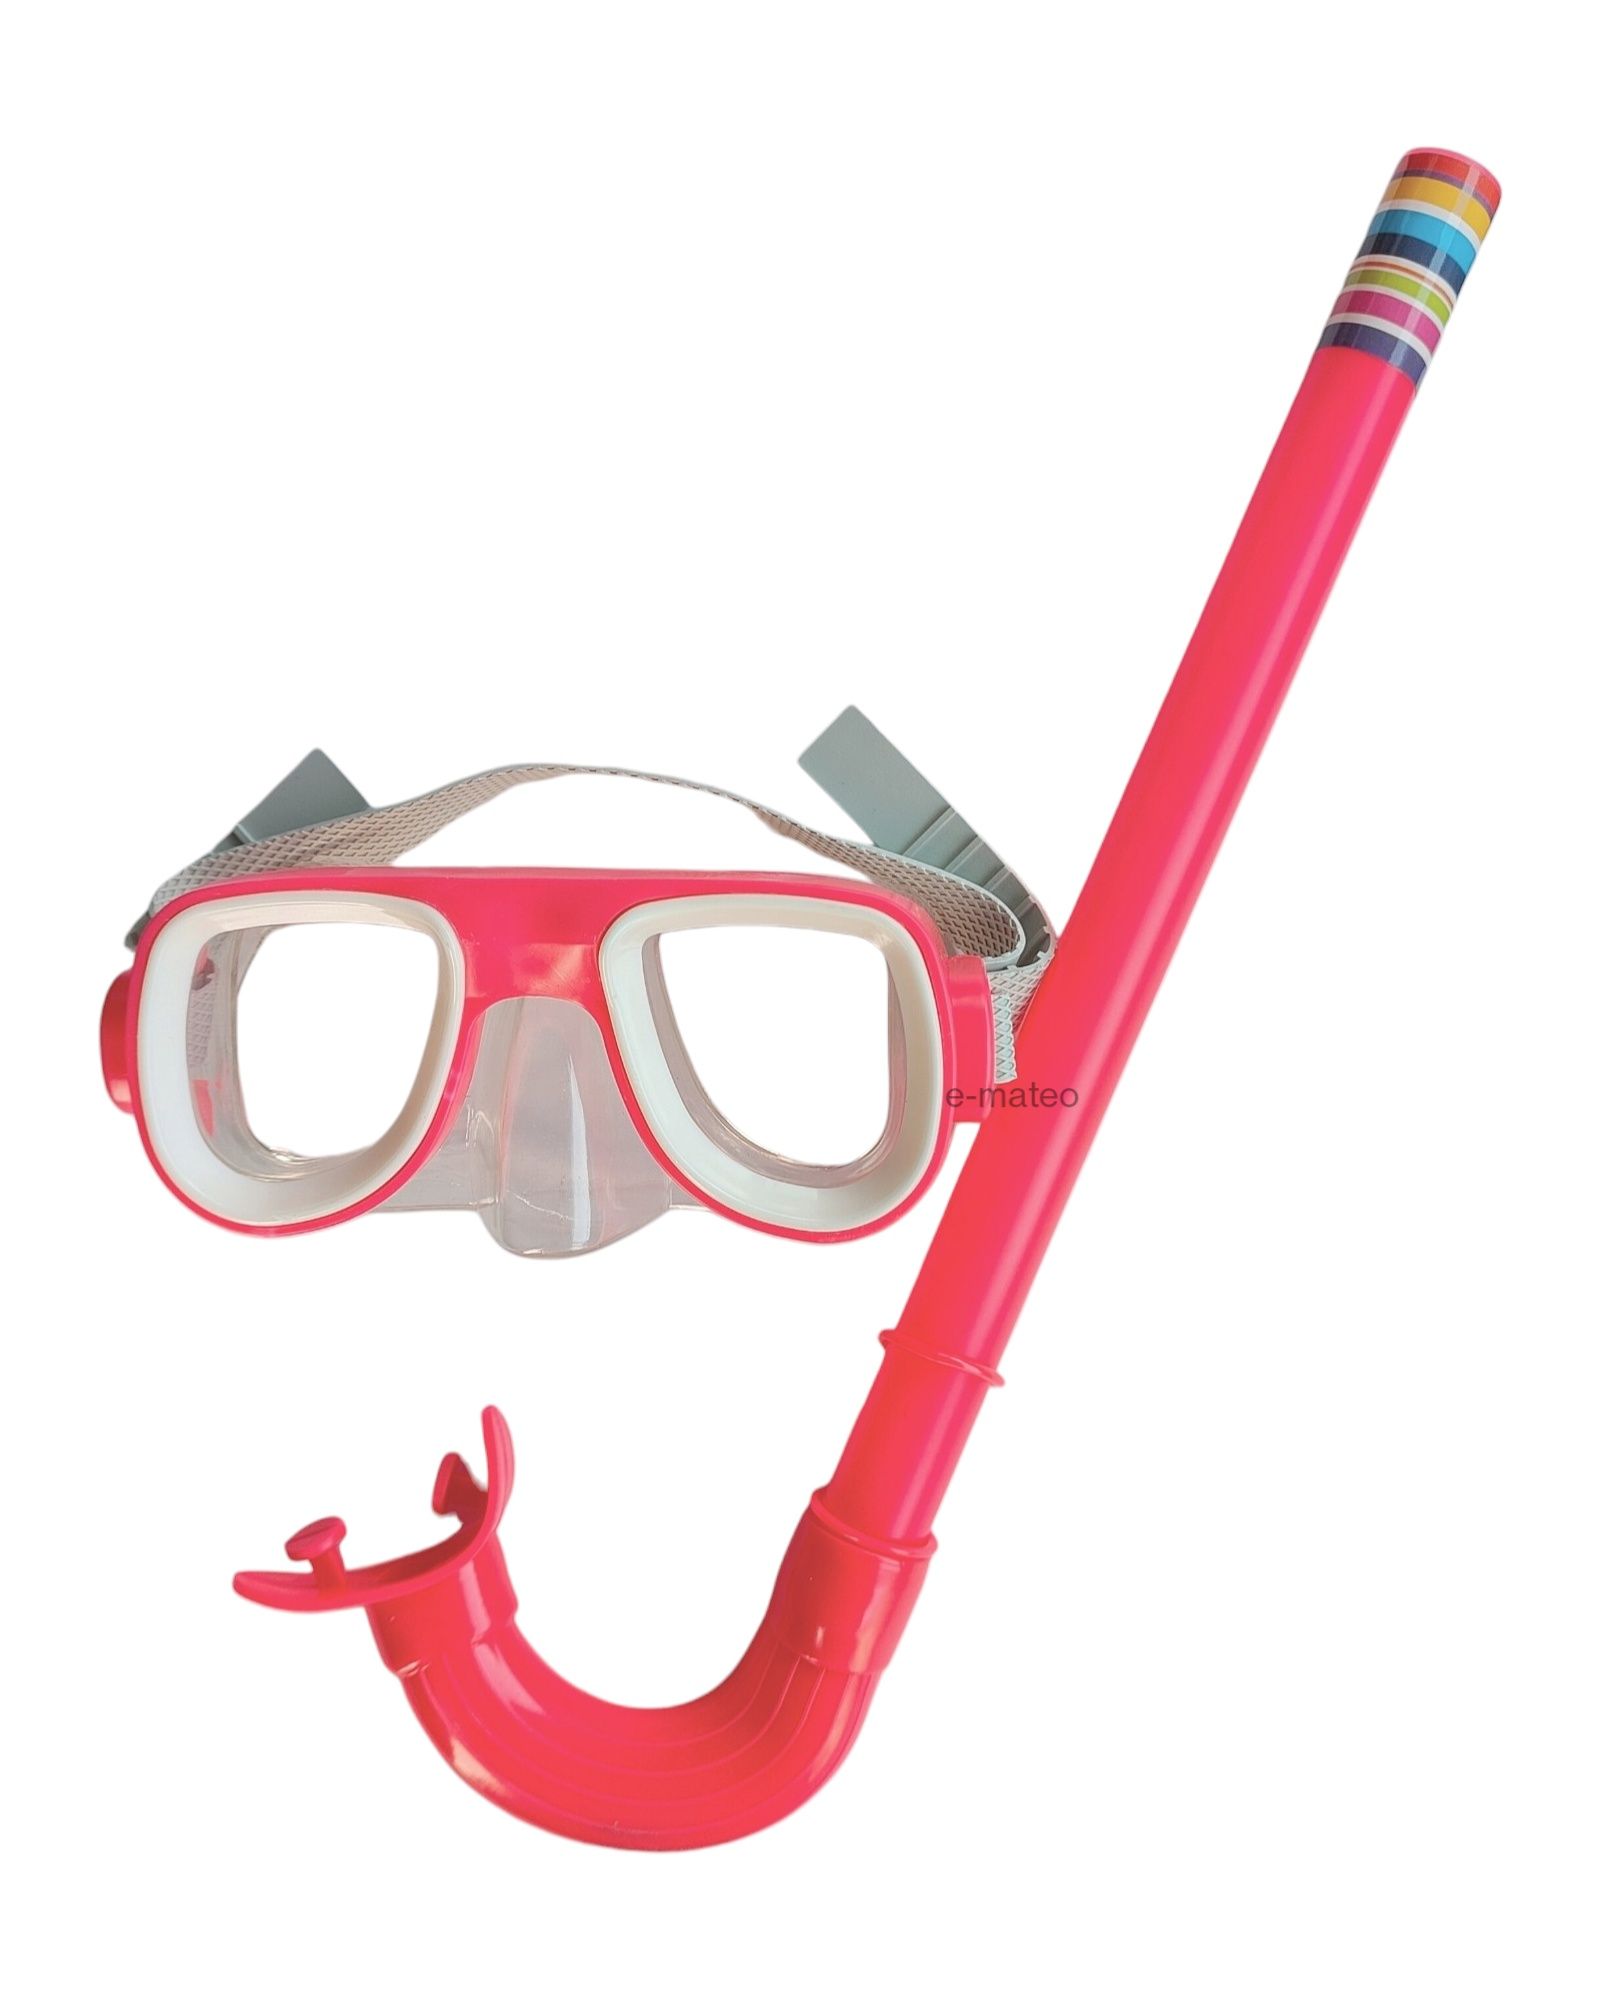 Zestaw do nurkowania okulary + rurka dla dzieci